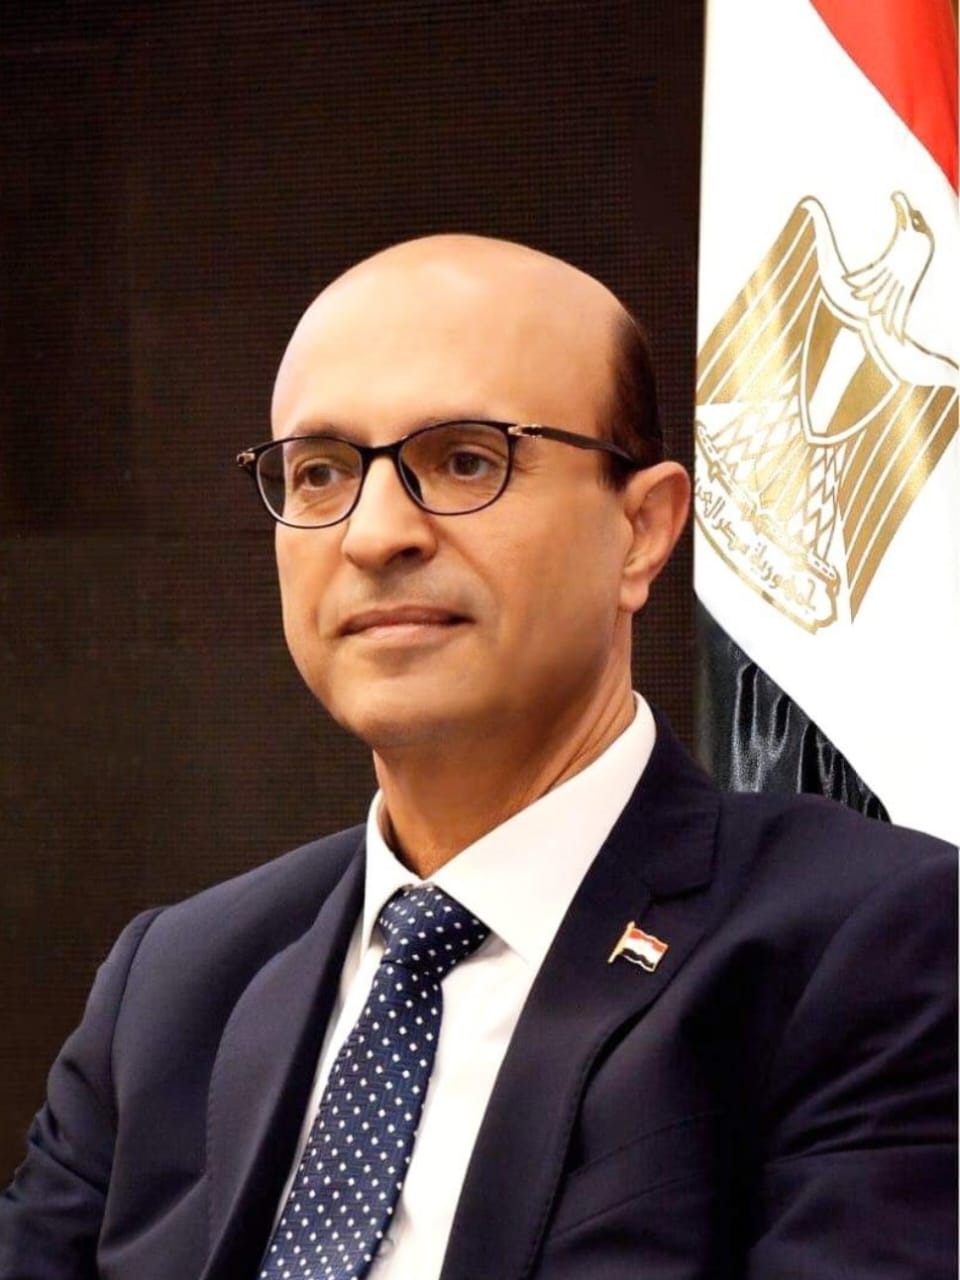  أحمد المنشاوي رئيس جامعة أسيوط الجديد